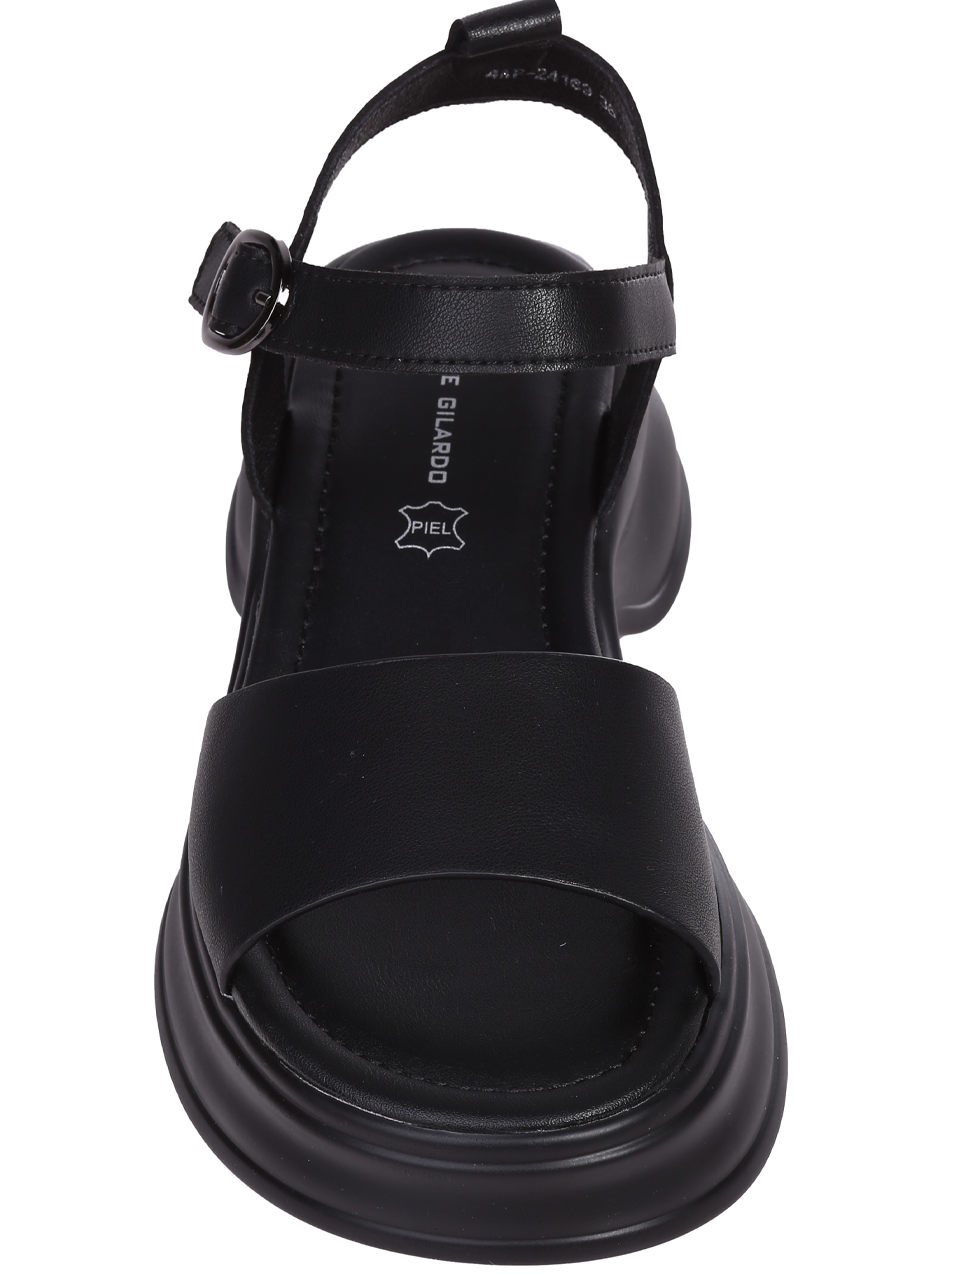 Ежедневни дамски сандали на платформа в черно 4AF-24169 black